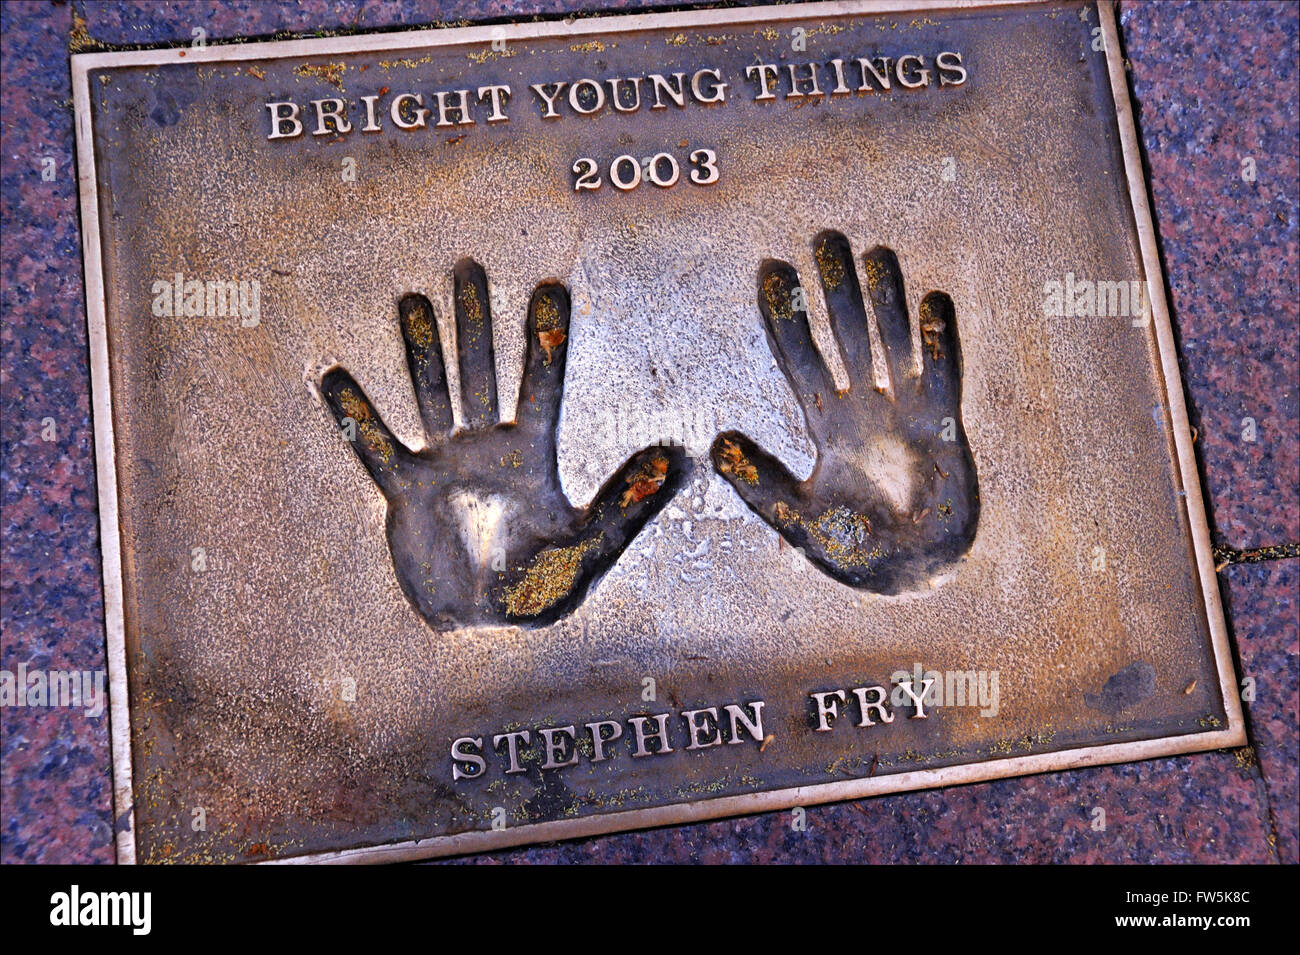 Stephen Fry targa di bronzo di handprint impostato nella pavimentazione di Leicester Square: di Stephen Fry, 'brillanti giovani cose", 2003. Foto Stock